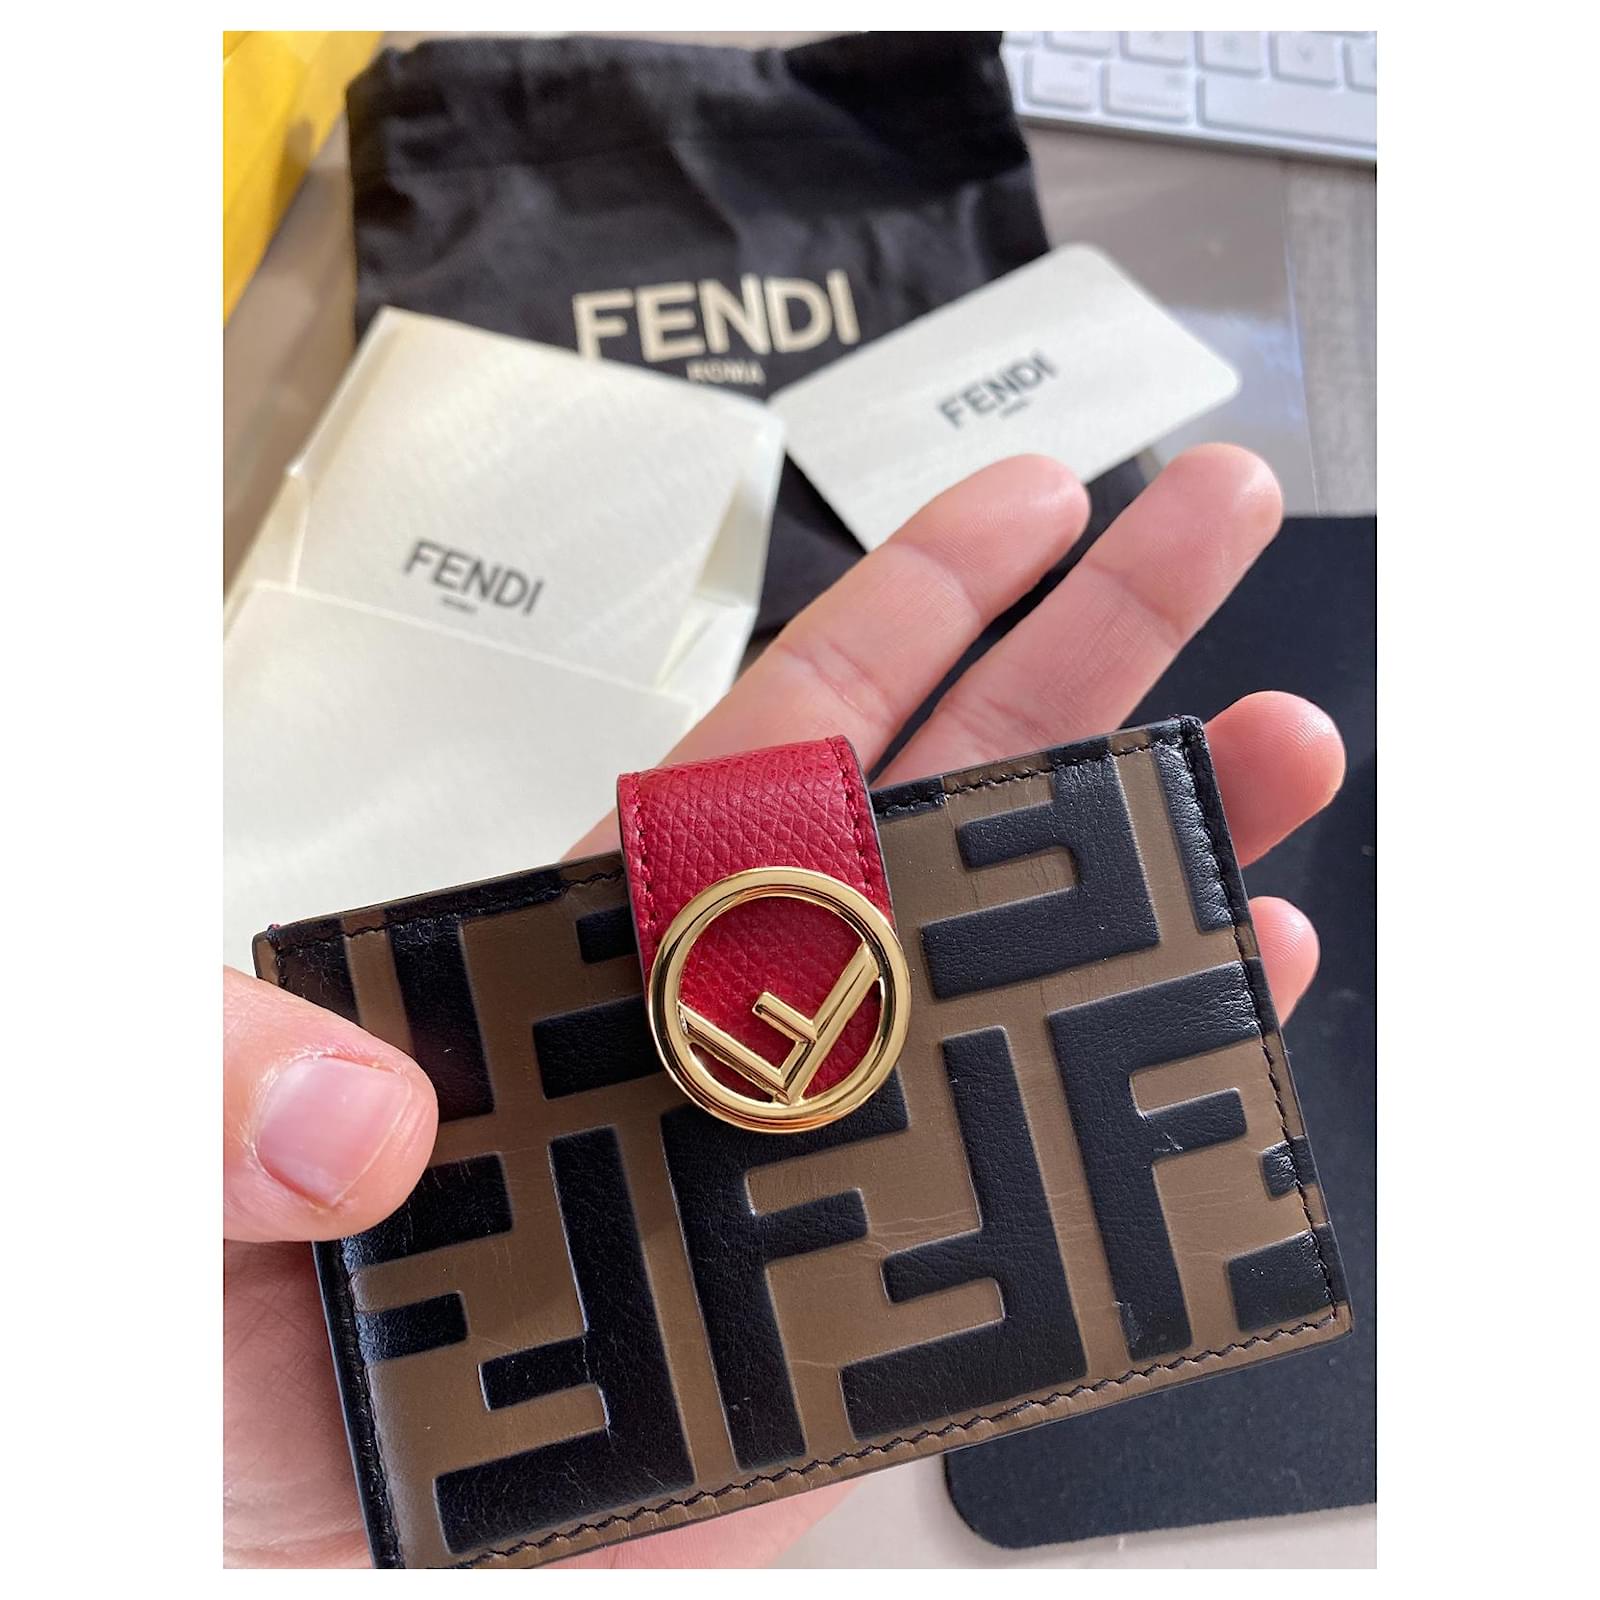 Fendi Key & Card Holders for Women - Poshmark